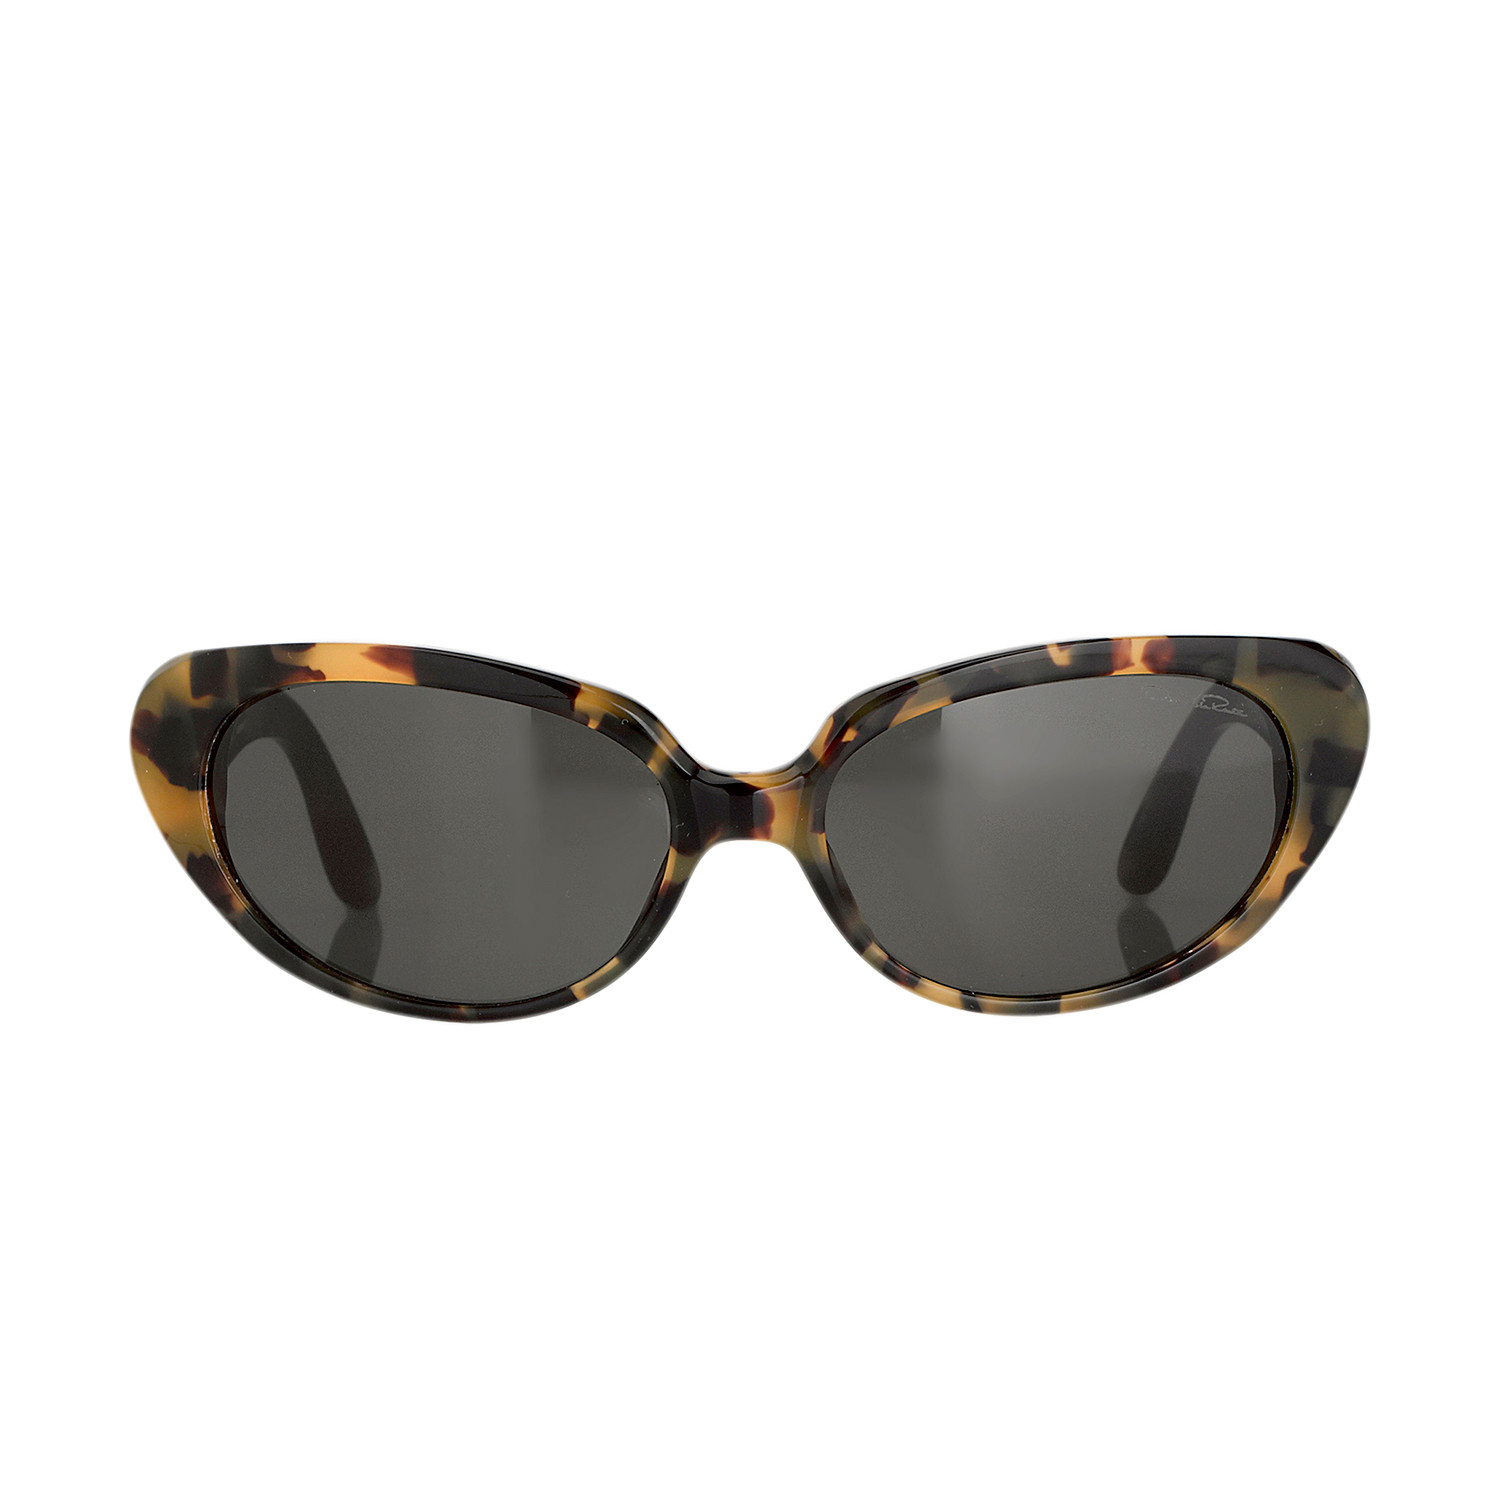 Women's Odlr43C7 Sunglasses // Dark Tortoise - Oscar de la Renta ...